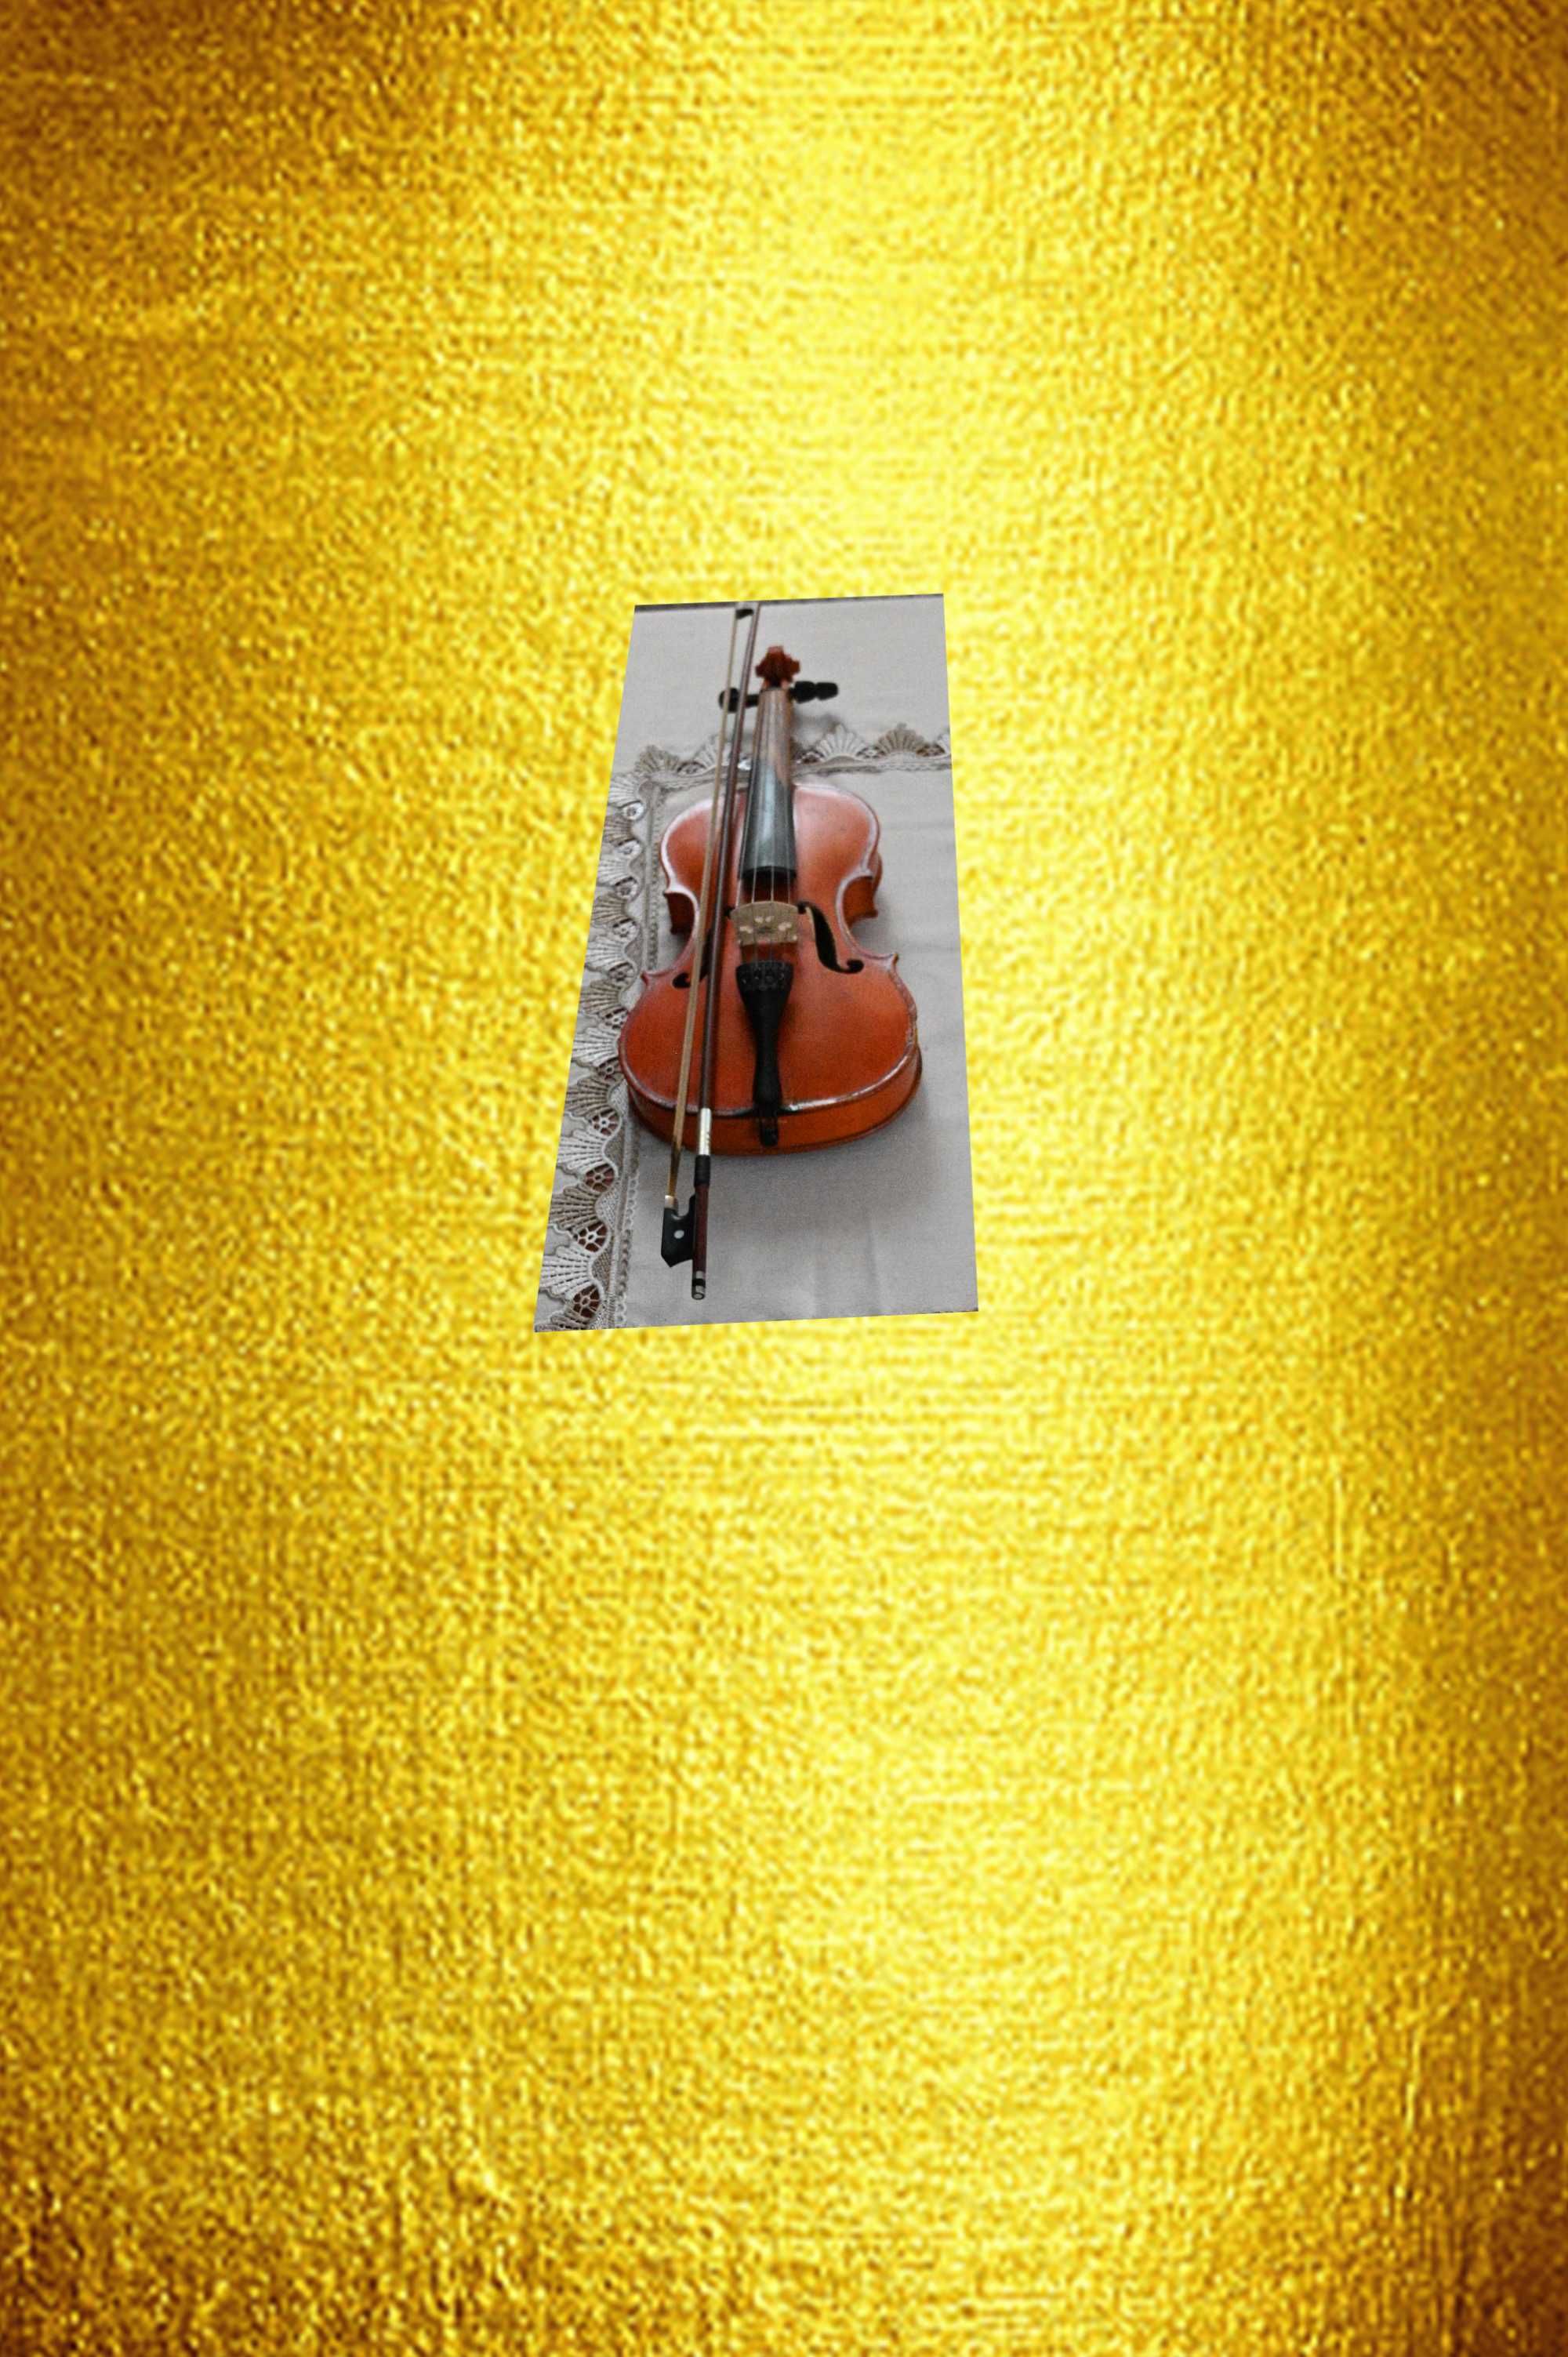 Vând vioară veche fabricată in anul 1974 la Reghin.